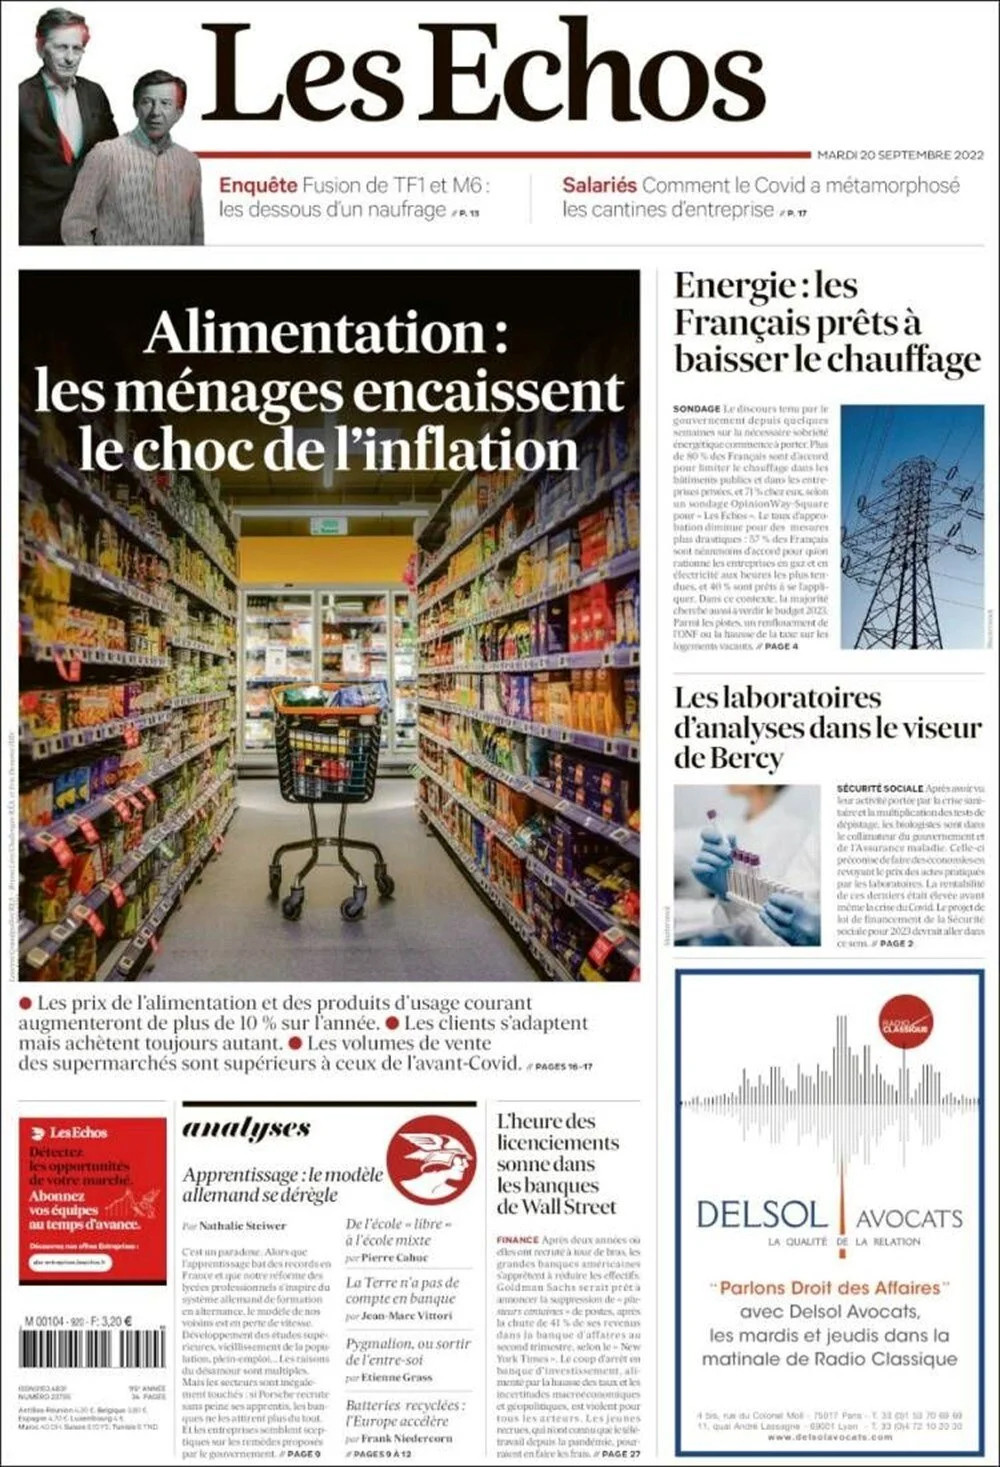 Fransa enerji krizinde: 'Kapatma çağrısı' manşetlerde!